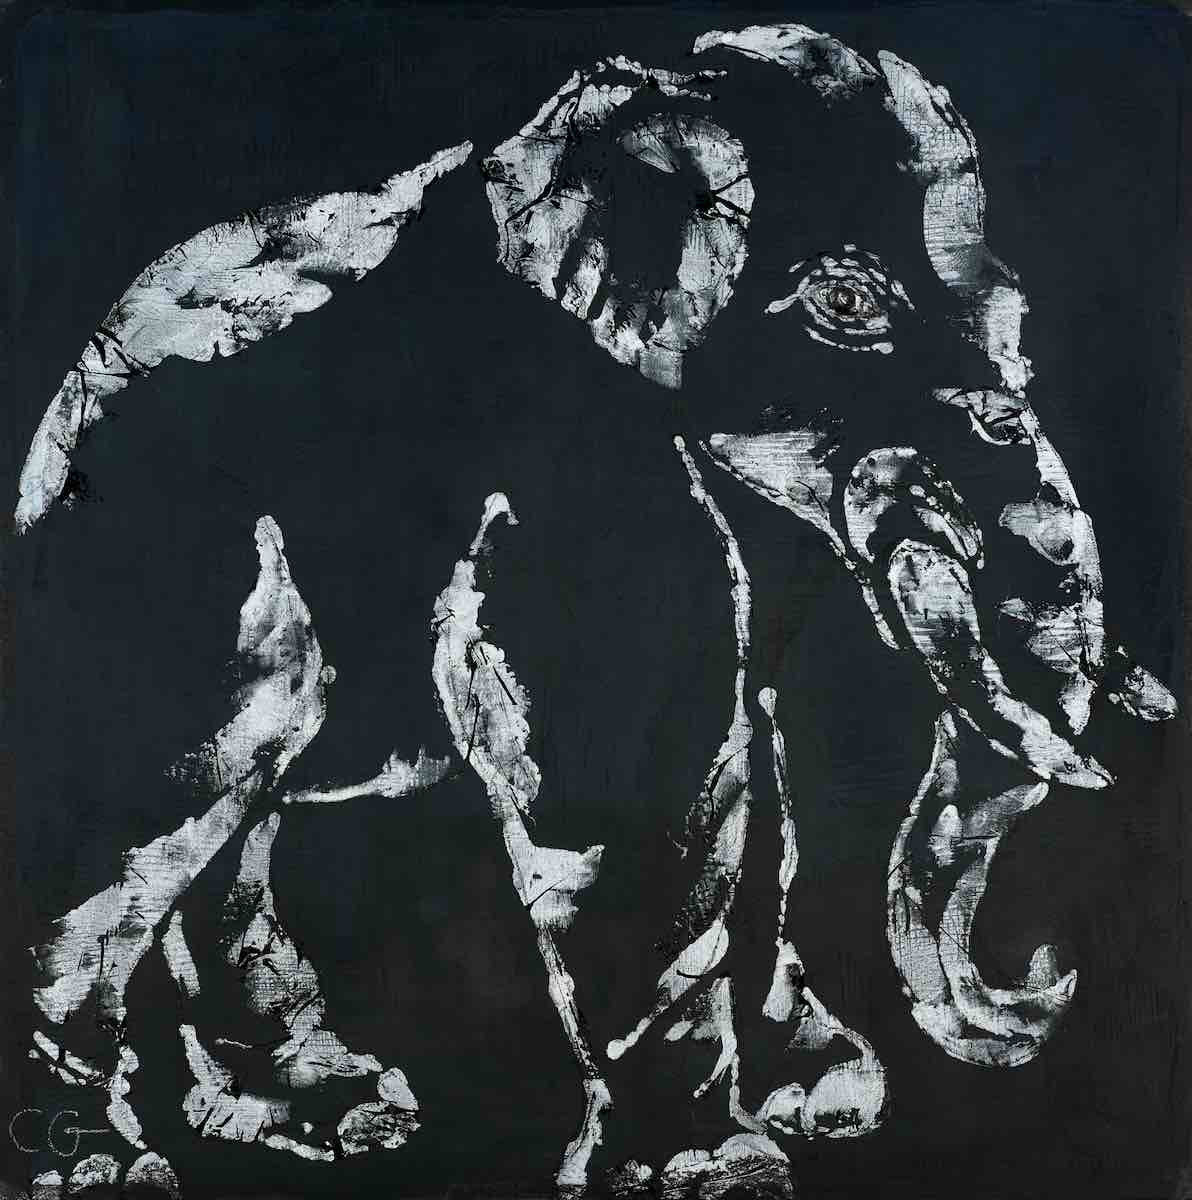 Portrait eines Elefanten von Claudia Groegler in schwarz weiß